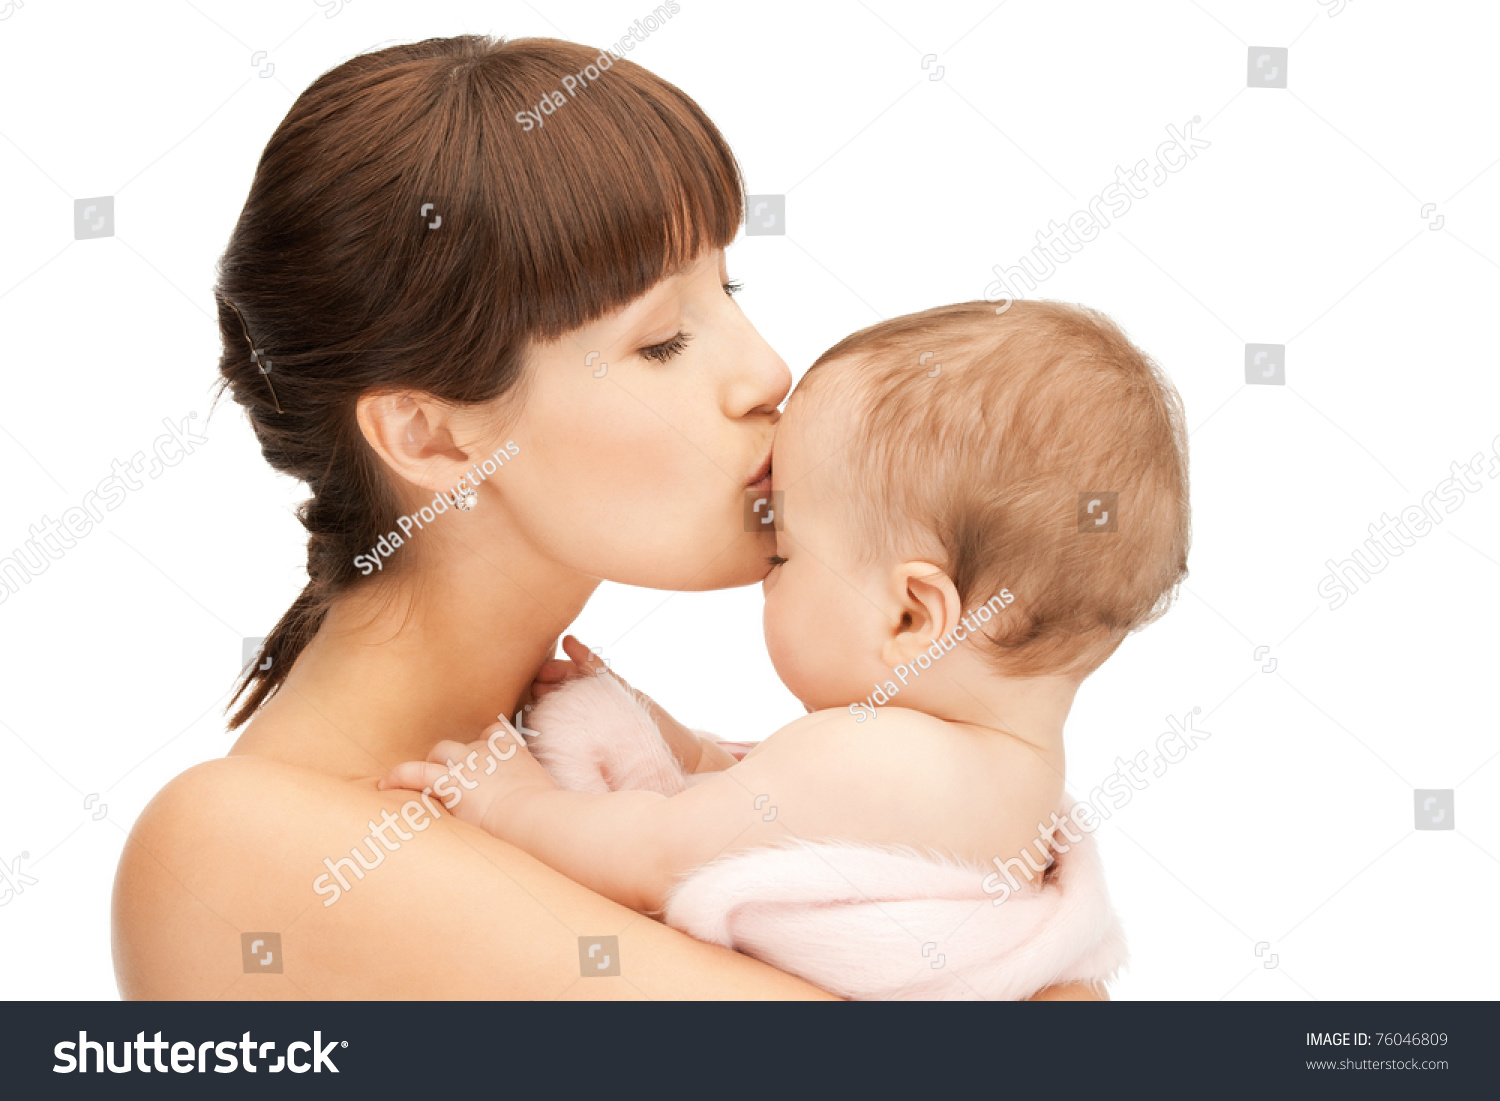 эротика онлайн мама и дети фото 19